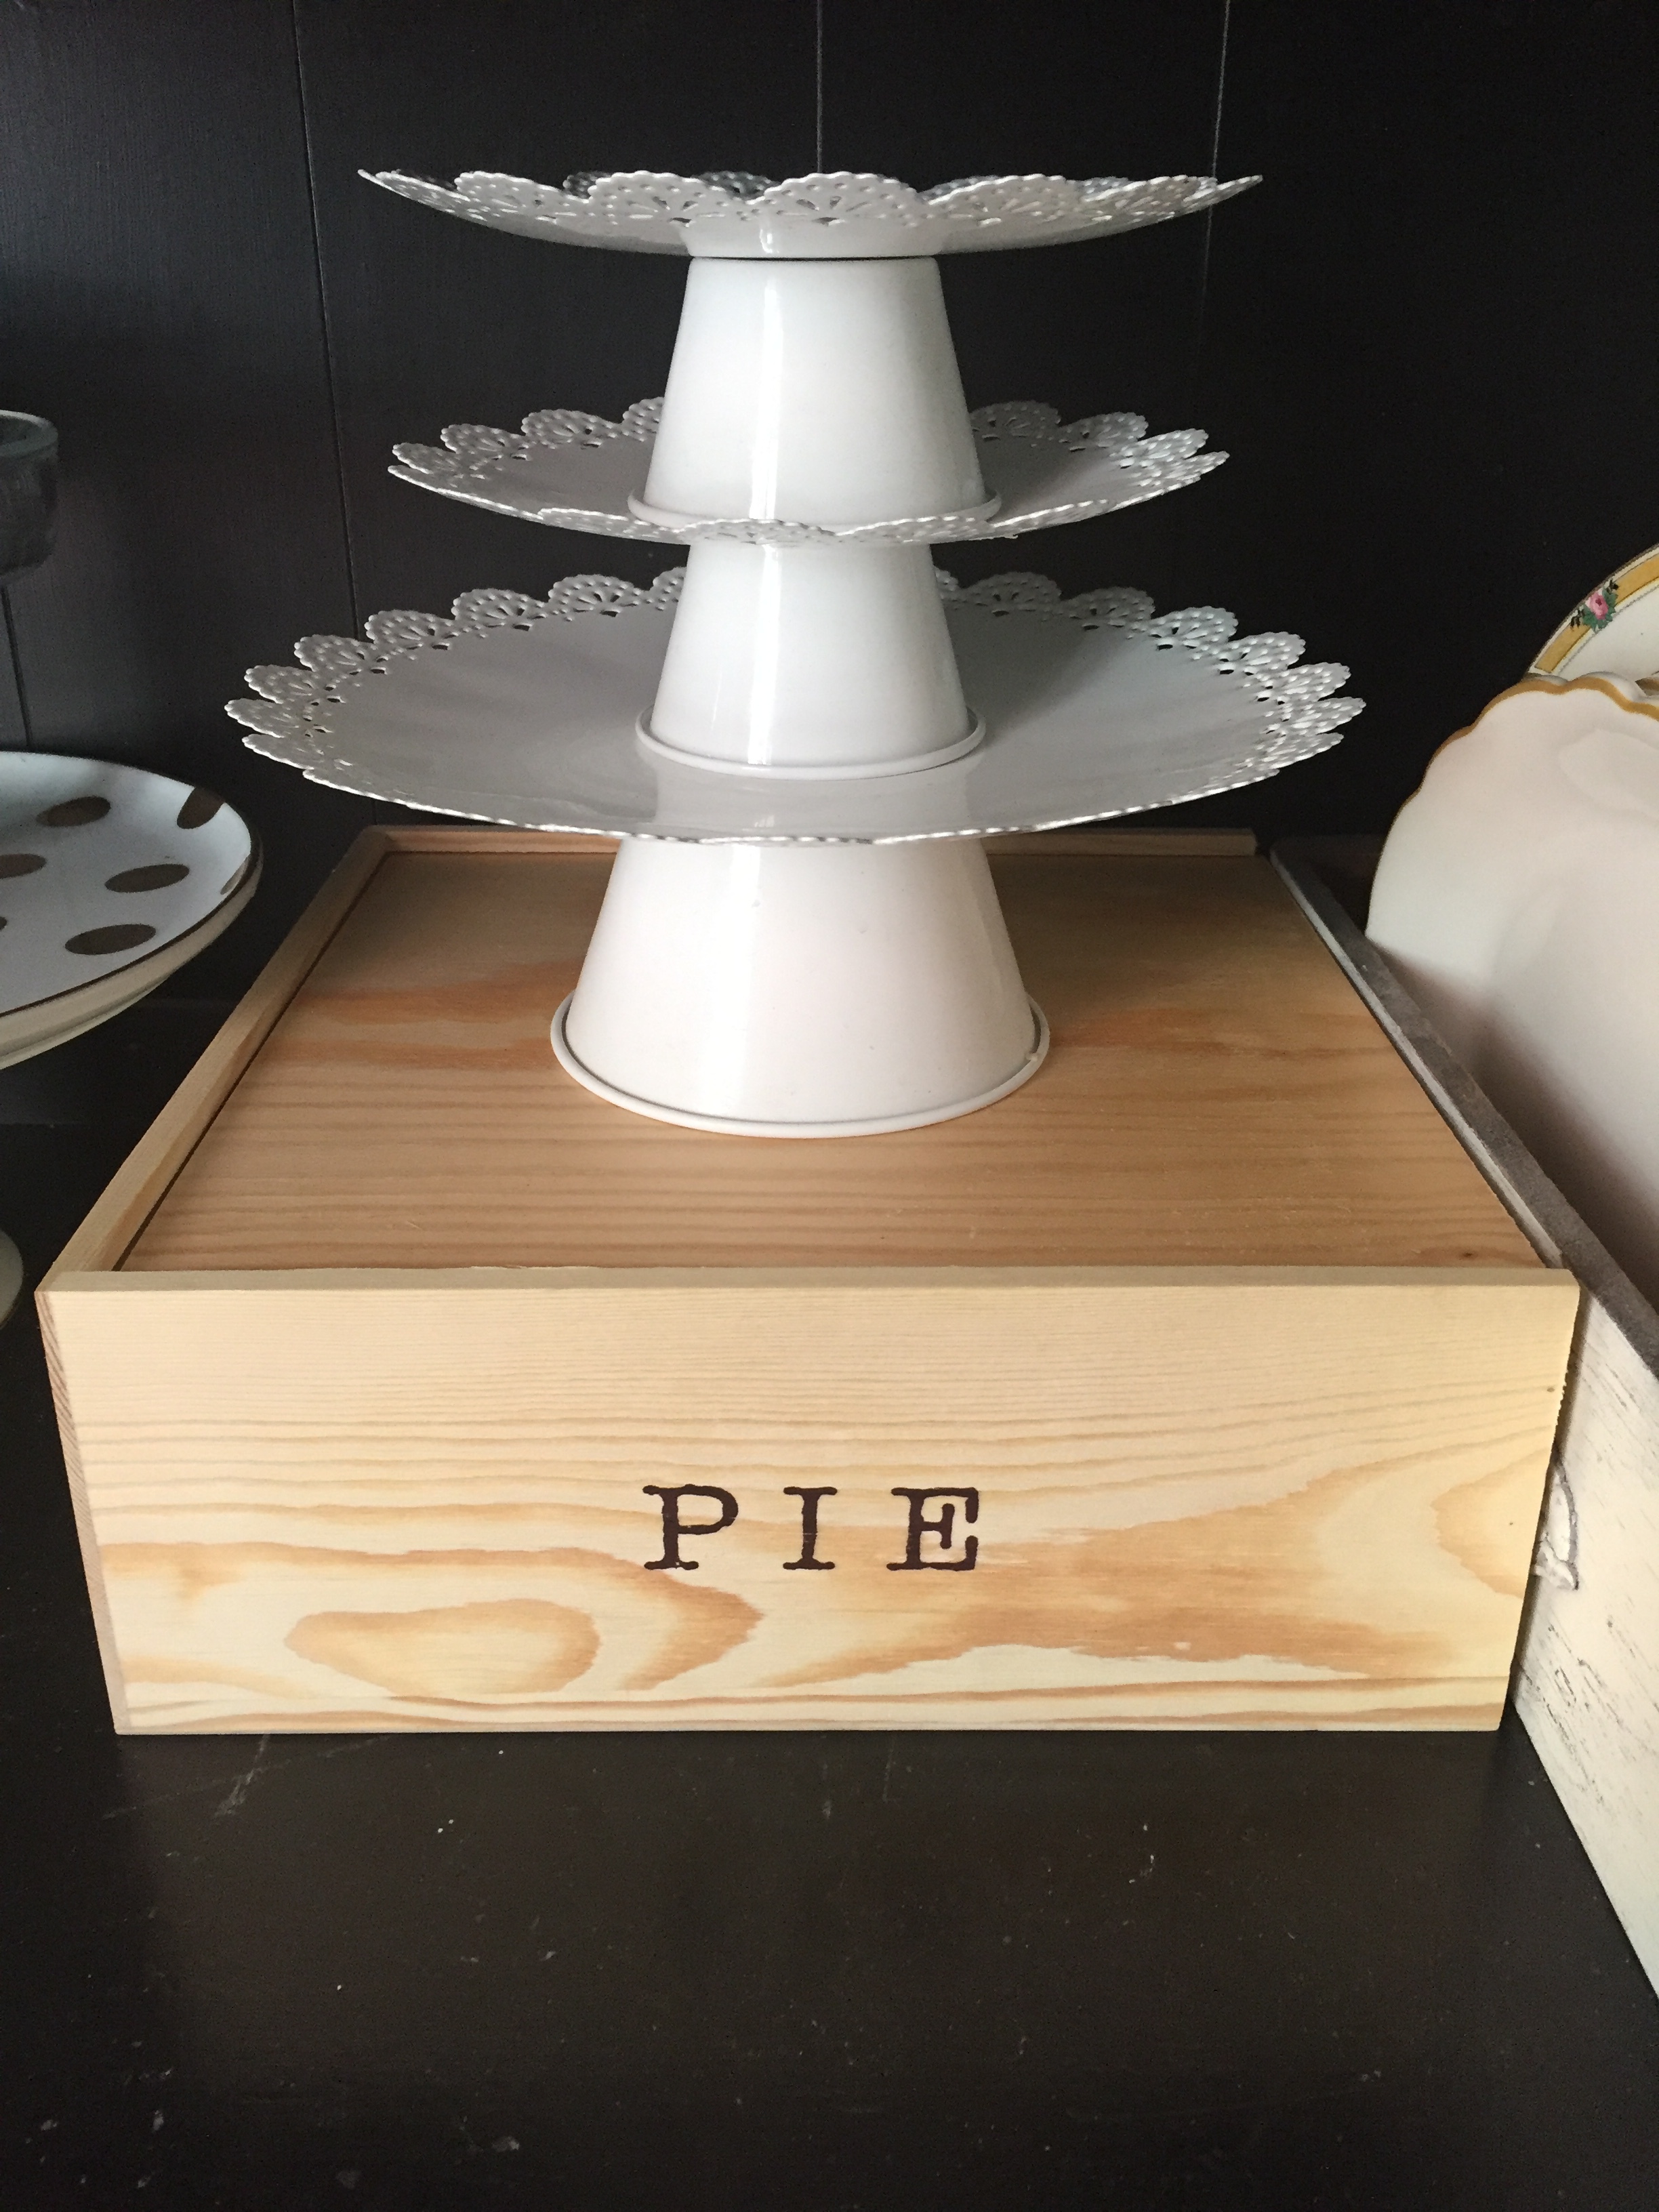 pie box